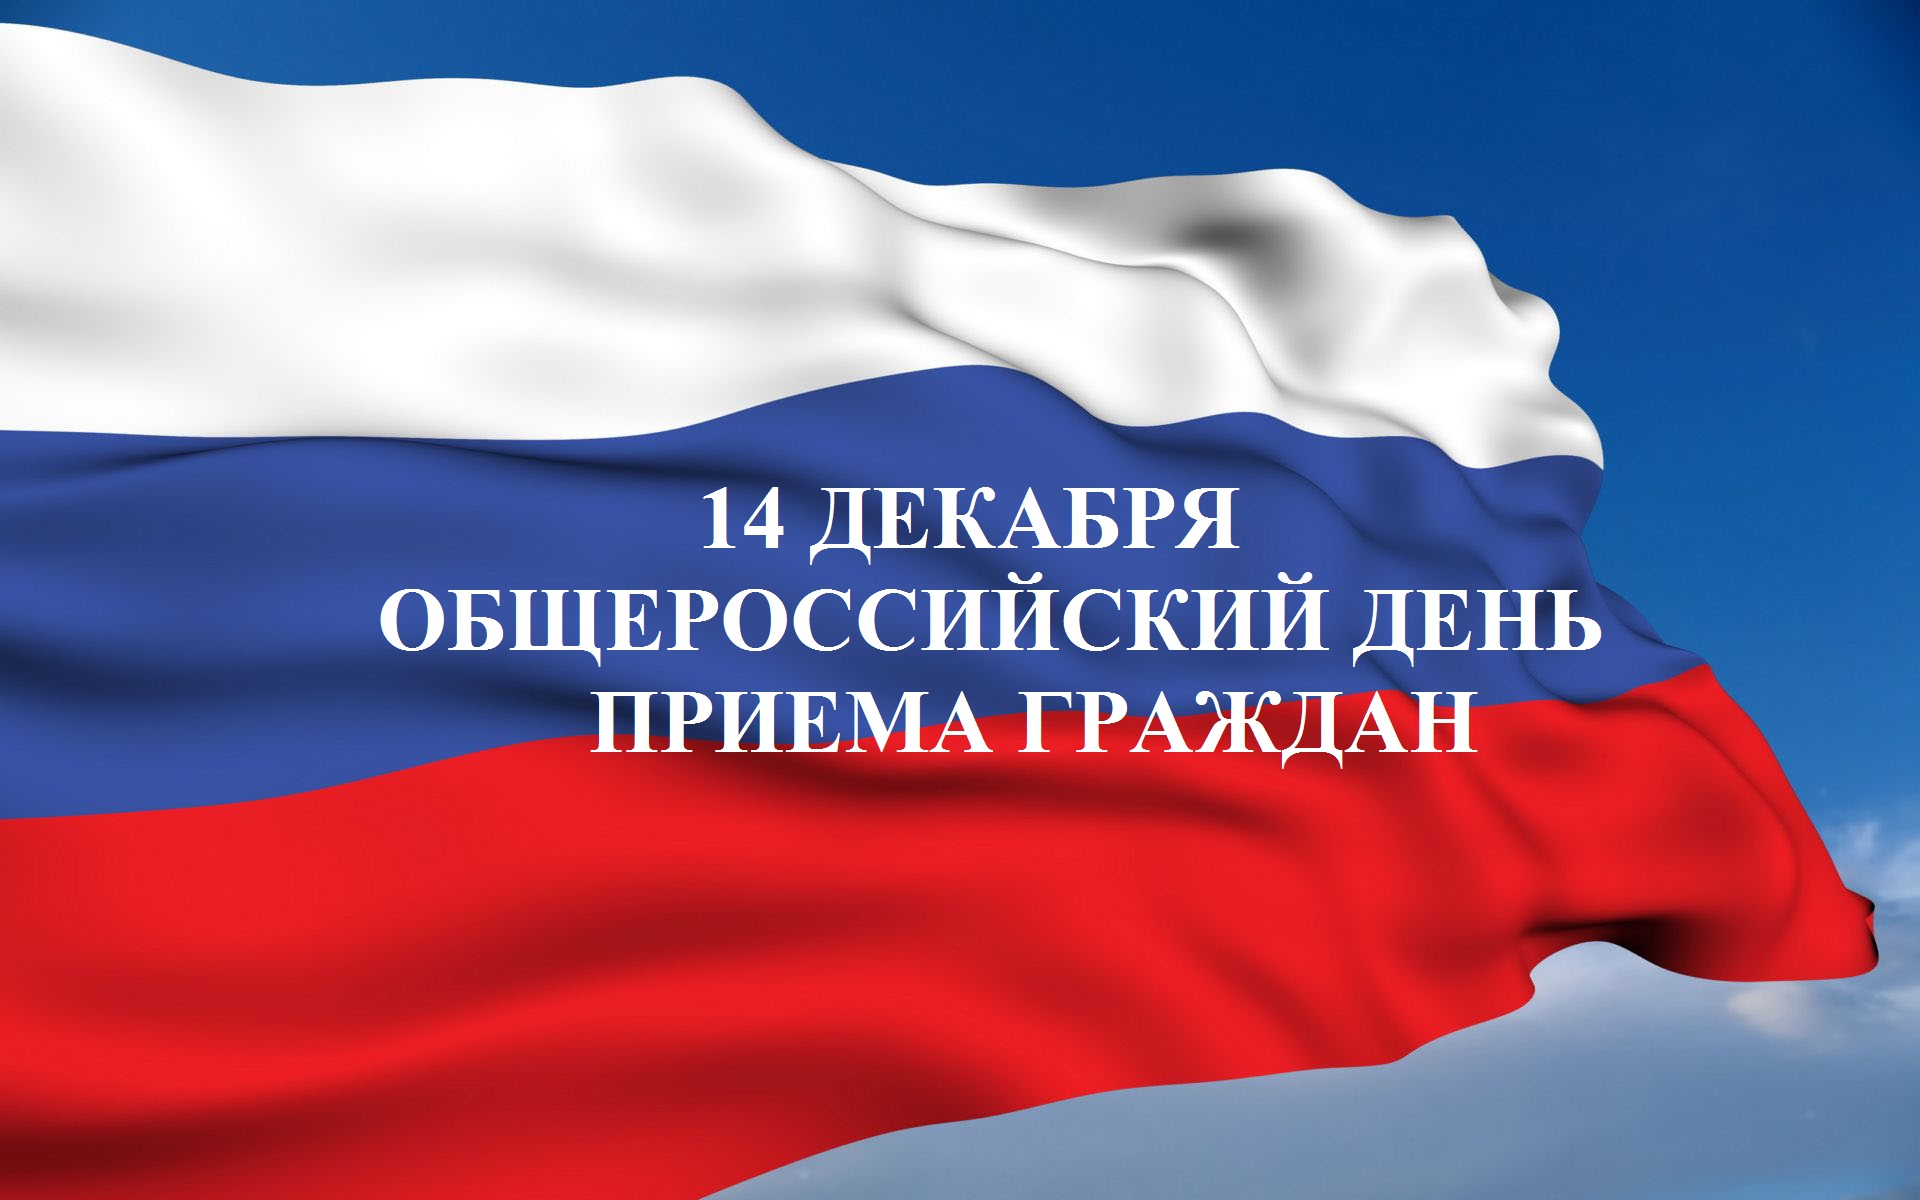 14 декабря в администрации города пройдет общероссийский прием граждан